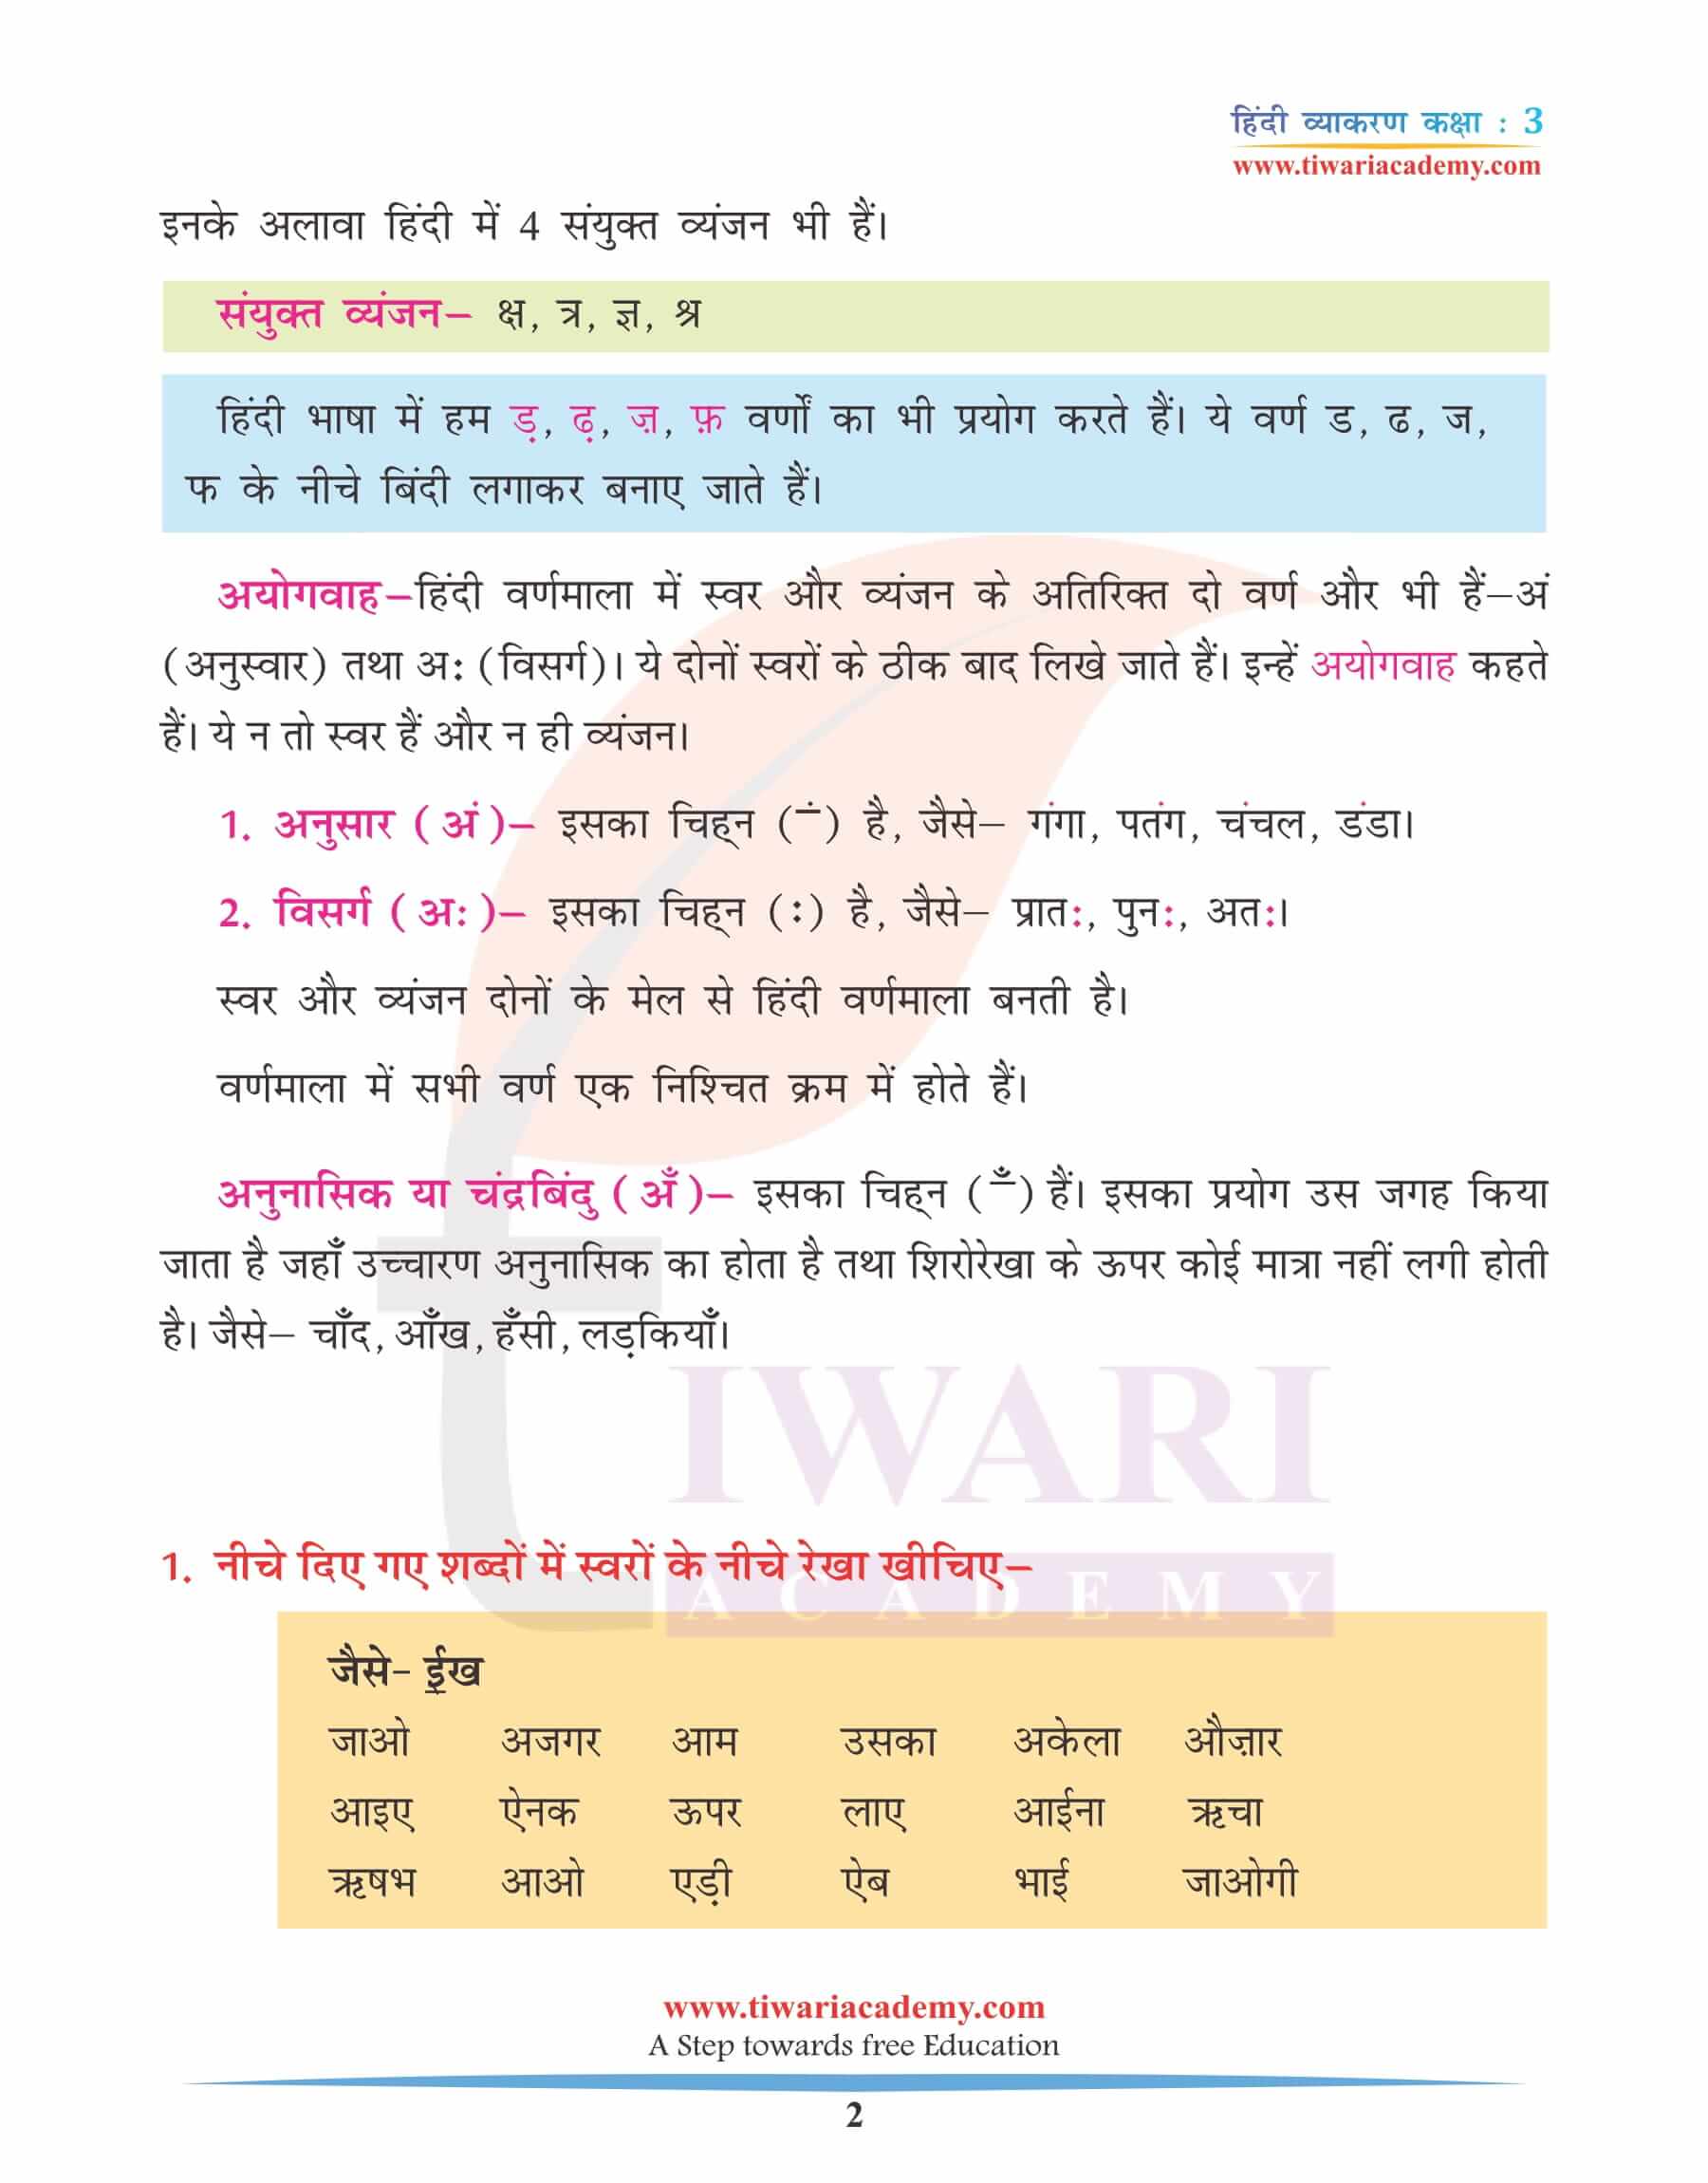 कक्षा 3 हिंदी व्याकरण अध्याय 2 वर्ण और वर्णमाला